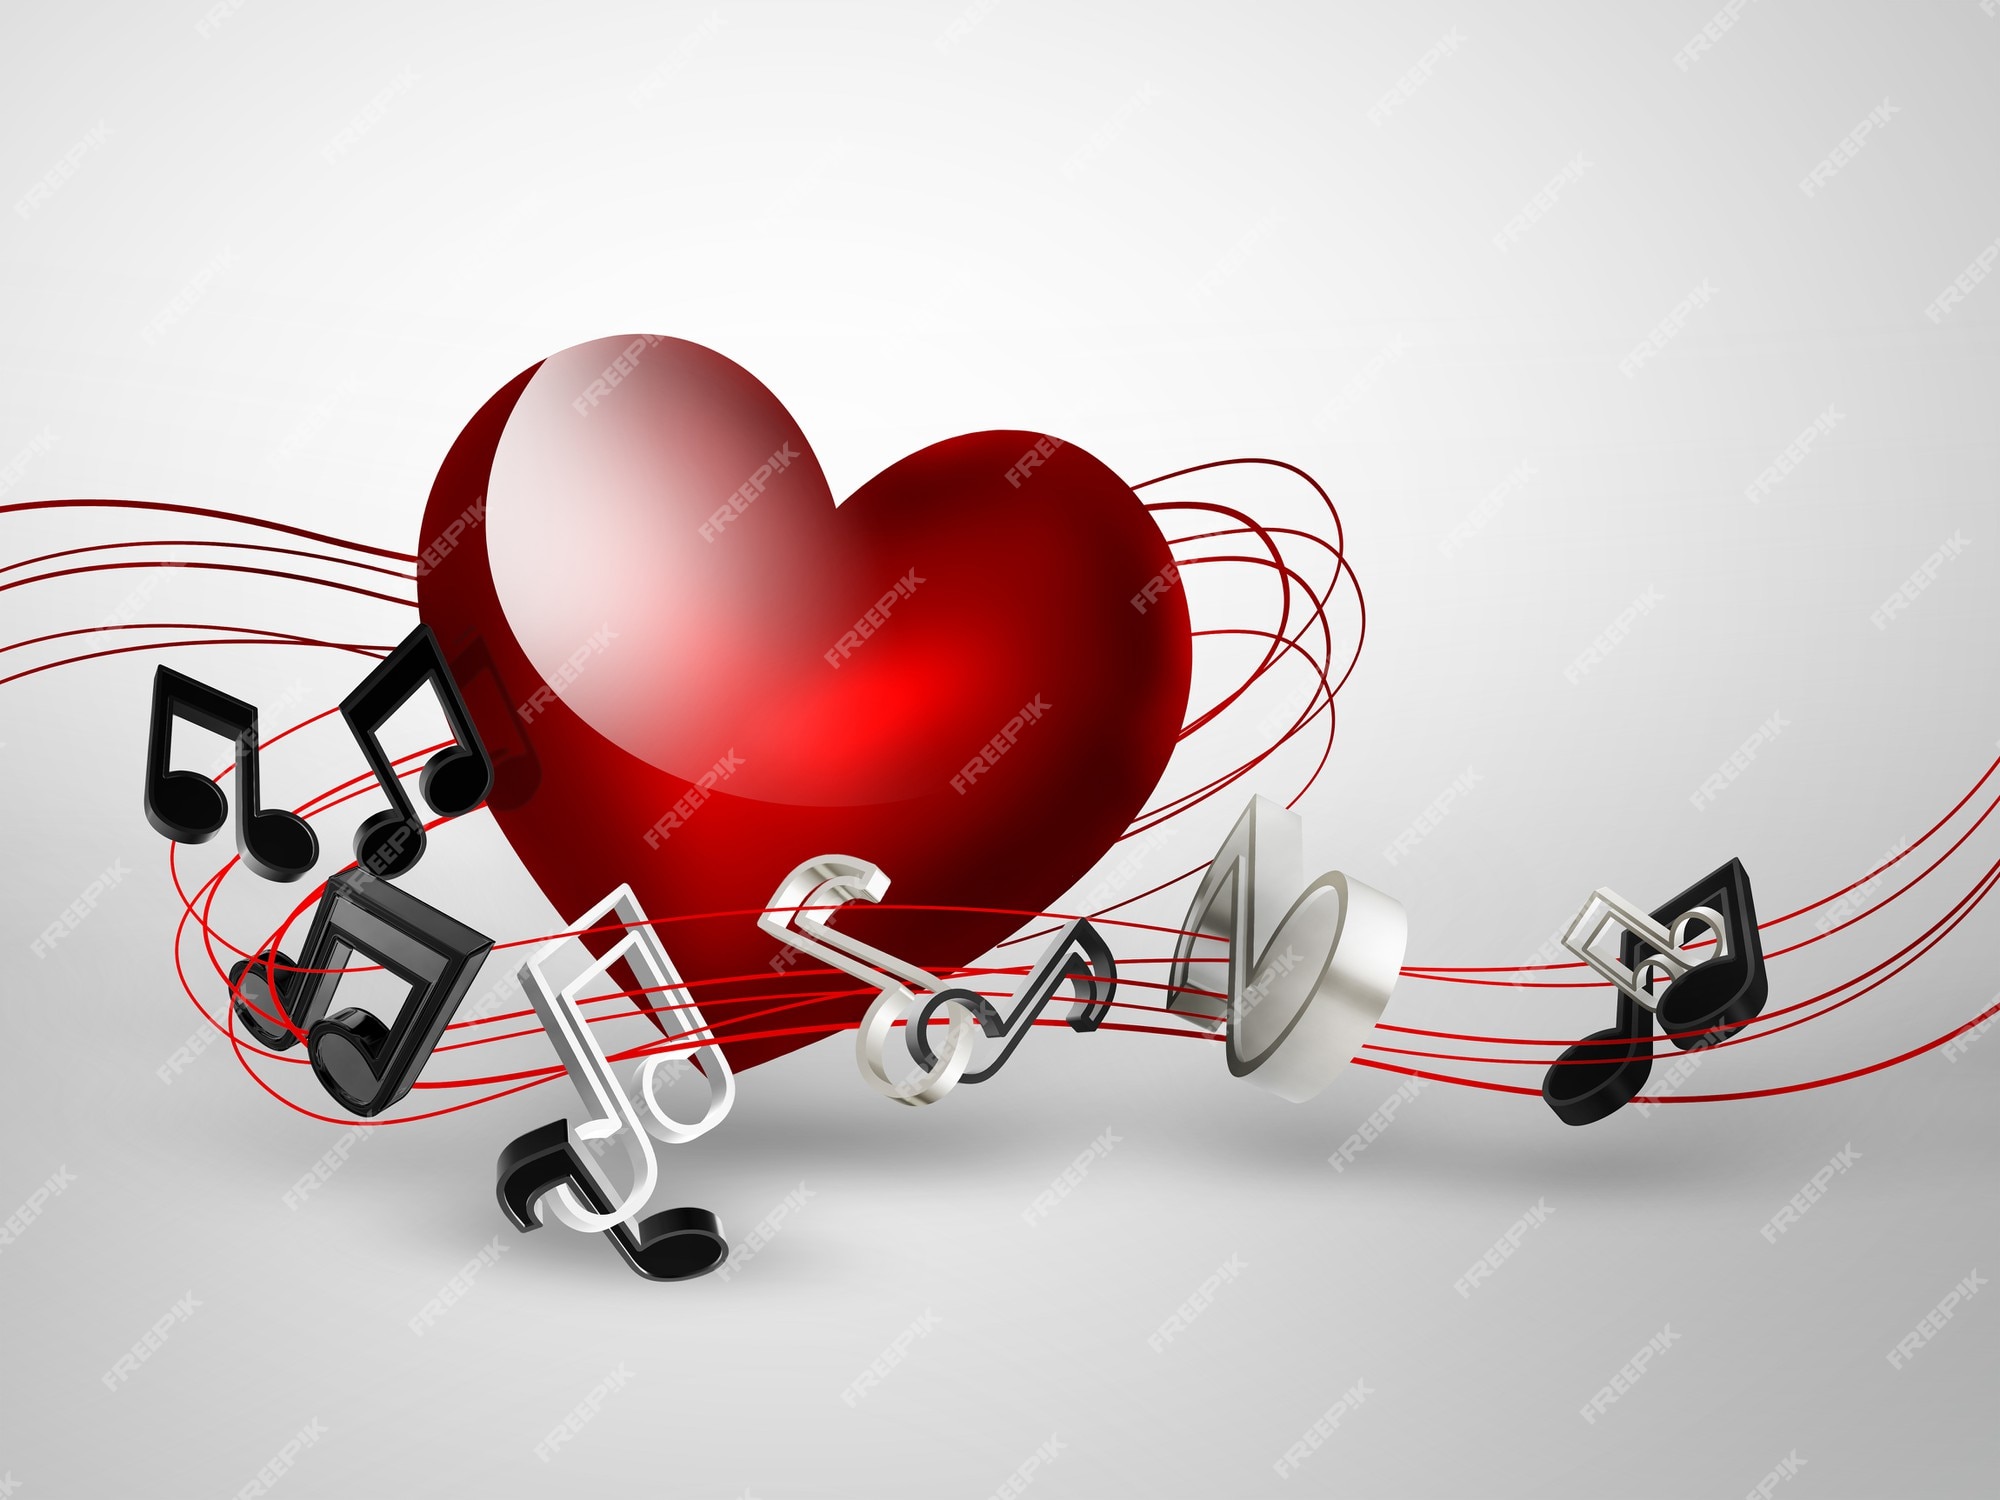 А я пою про любовь. Поющие сердца. Музыкальное сердце. Музыкальные картинки. Сердечко музыка.